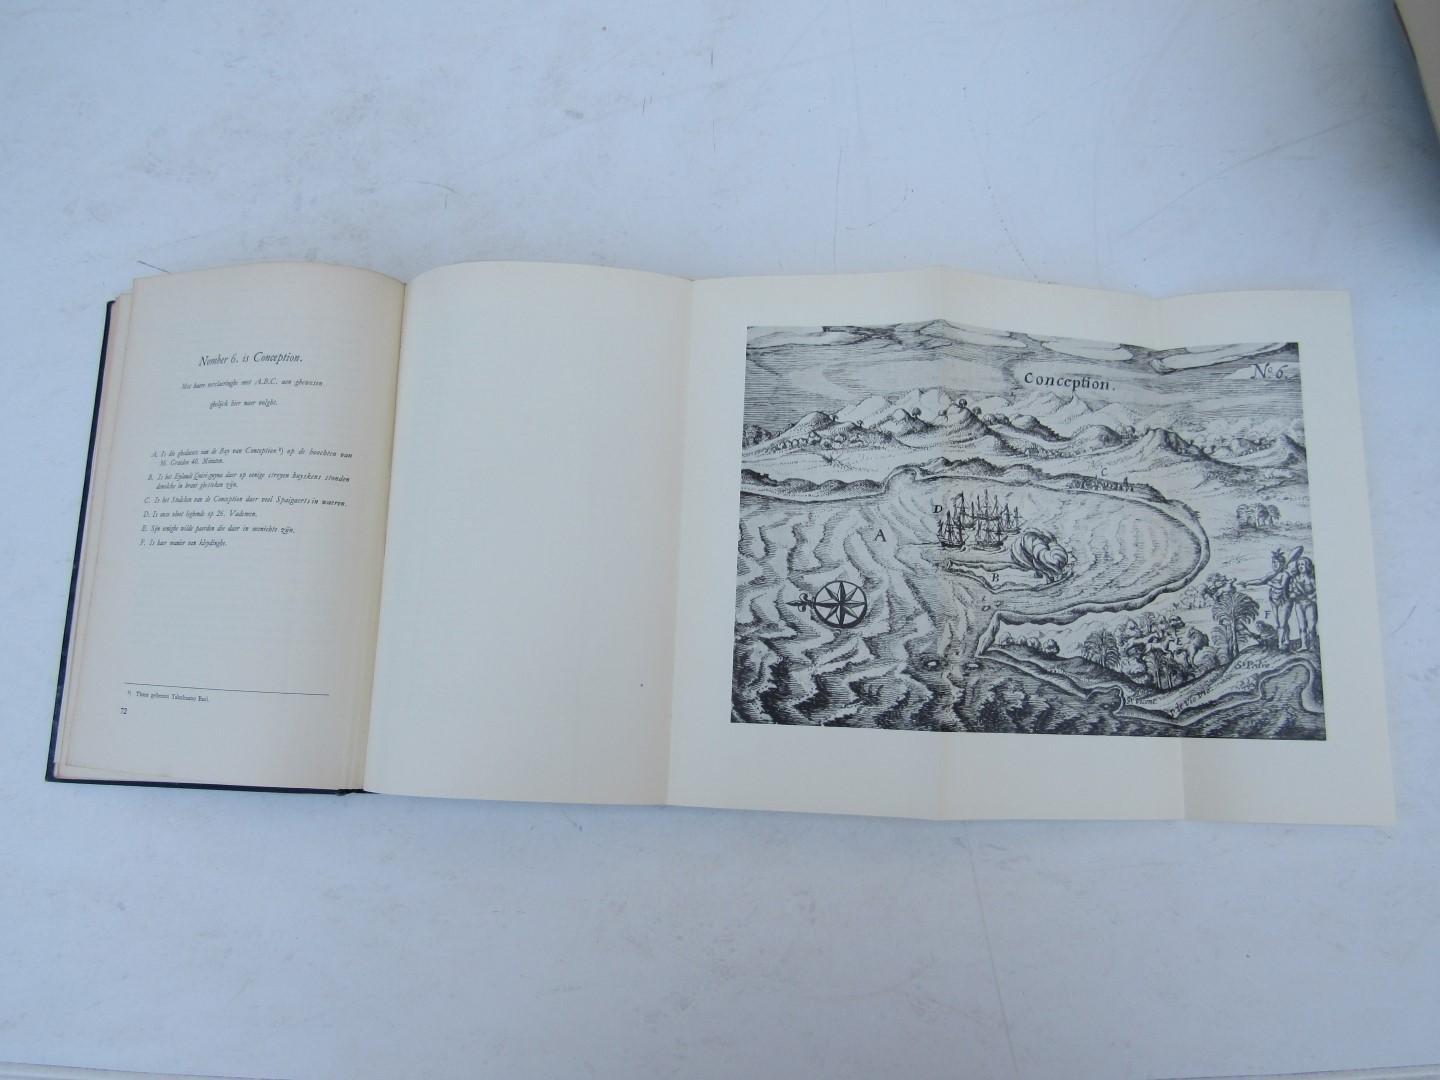 Posthumus Meyes, R. - De reis van Joris van Spilbergen door de Straat van Maghelhaes naar Oost-Indië en terug rond Zuid-Afrika in 1614-1617. Met kaarten en platen